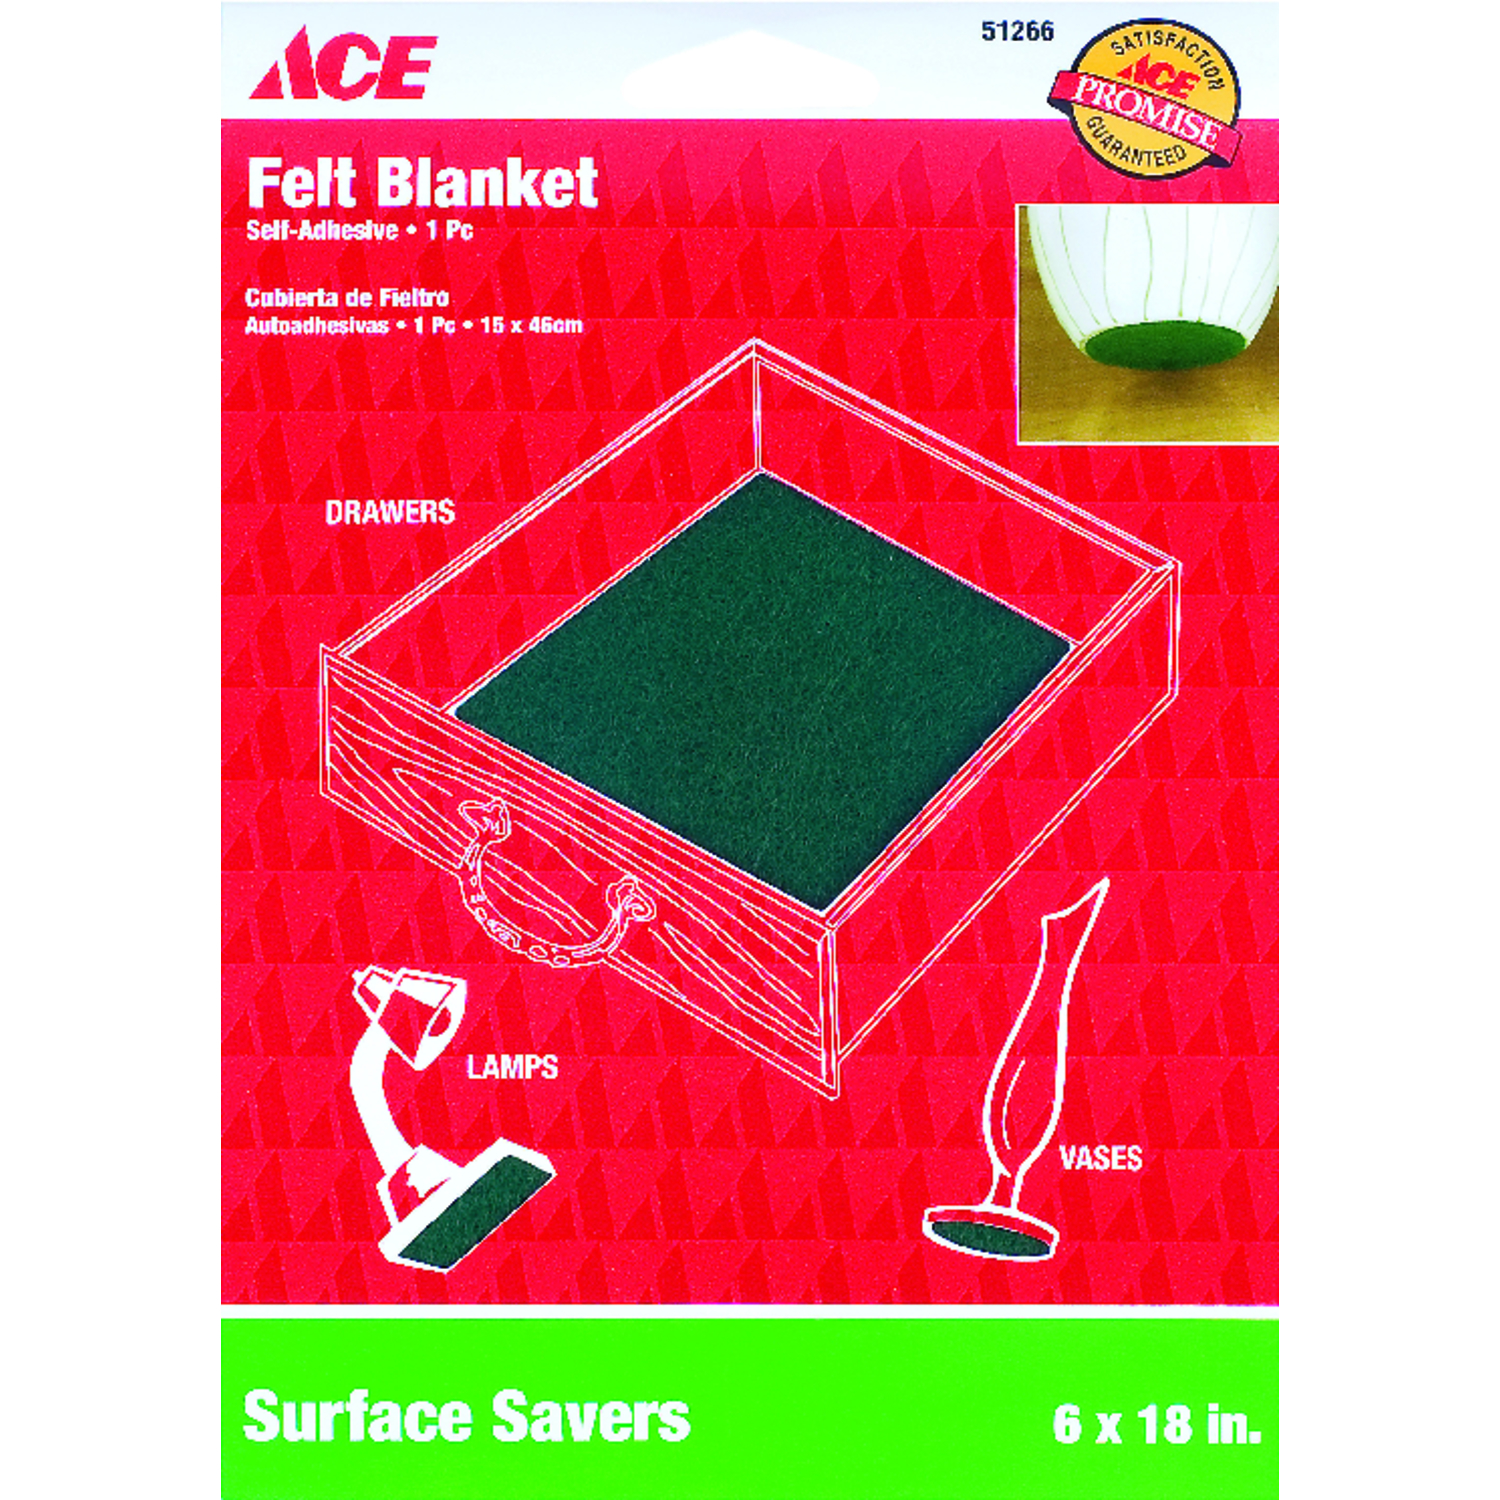 Green - 3mm thick felt sheet